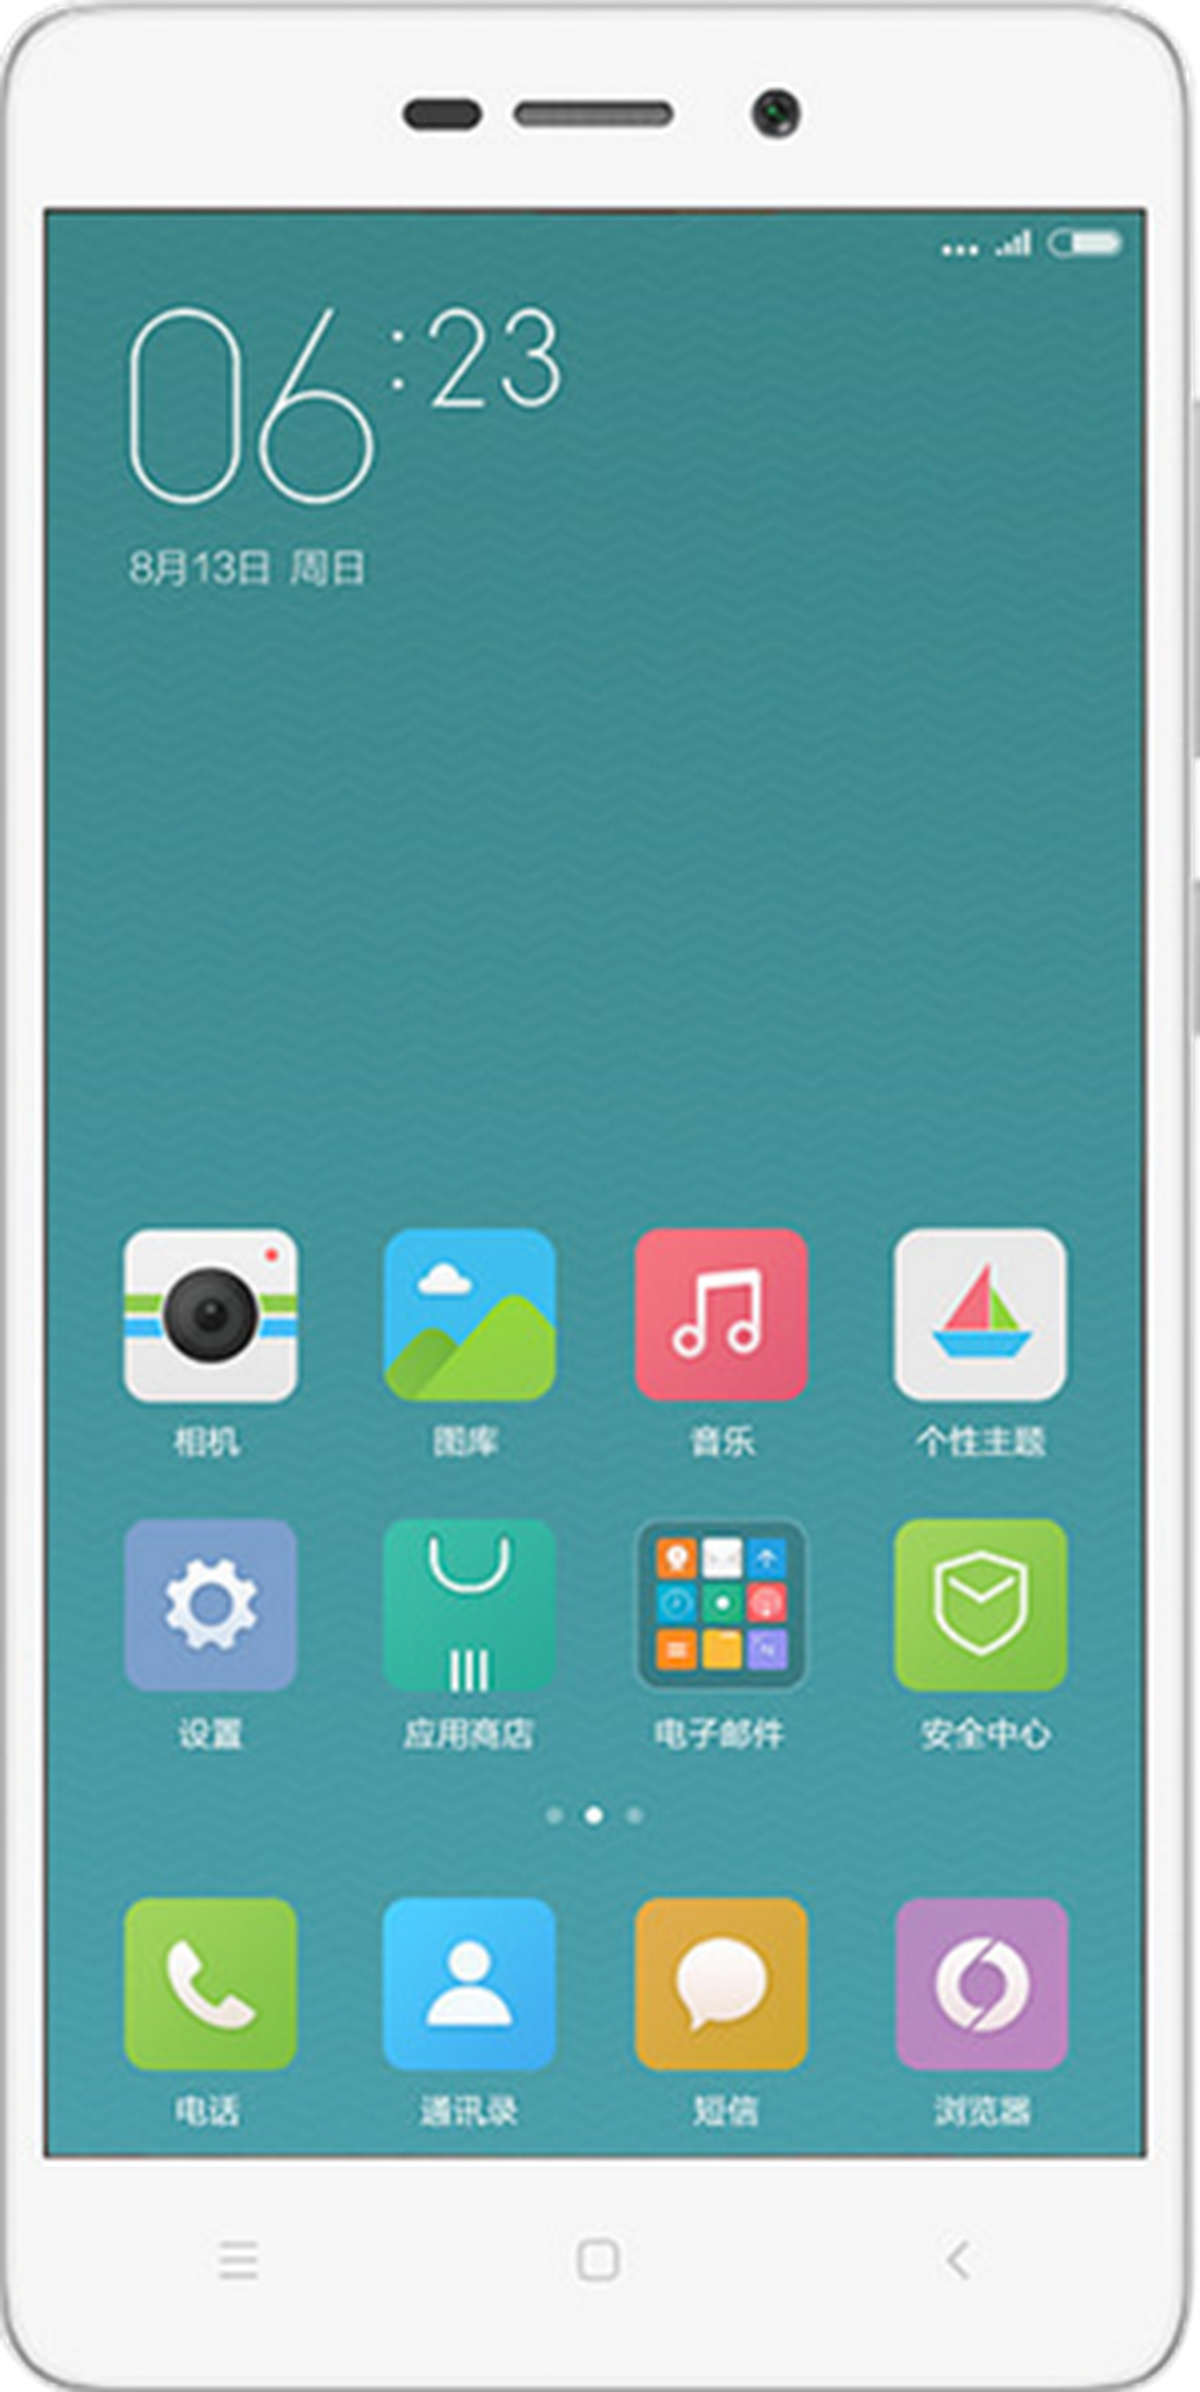 Xiaomi Redmi 4: características valoraciones | Computer Hoy